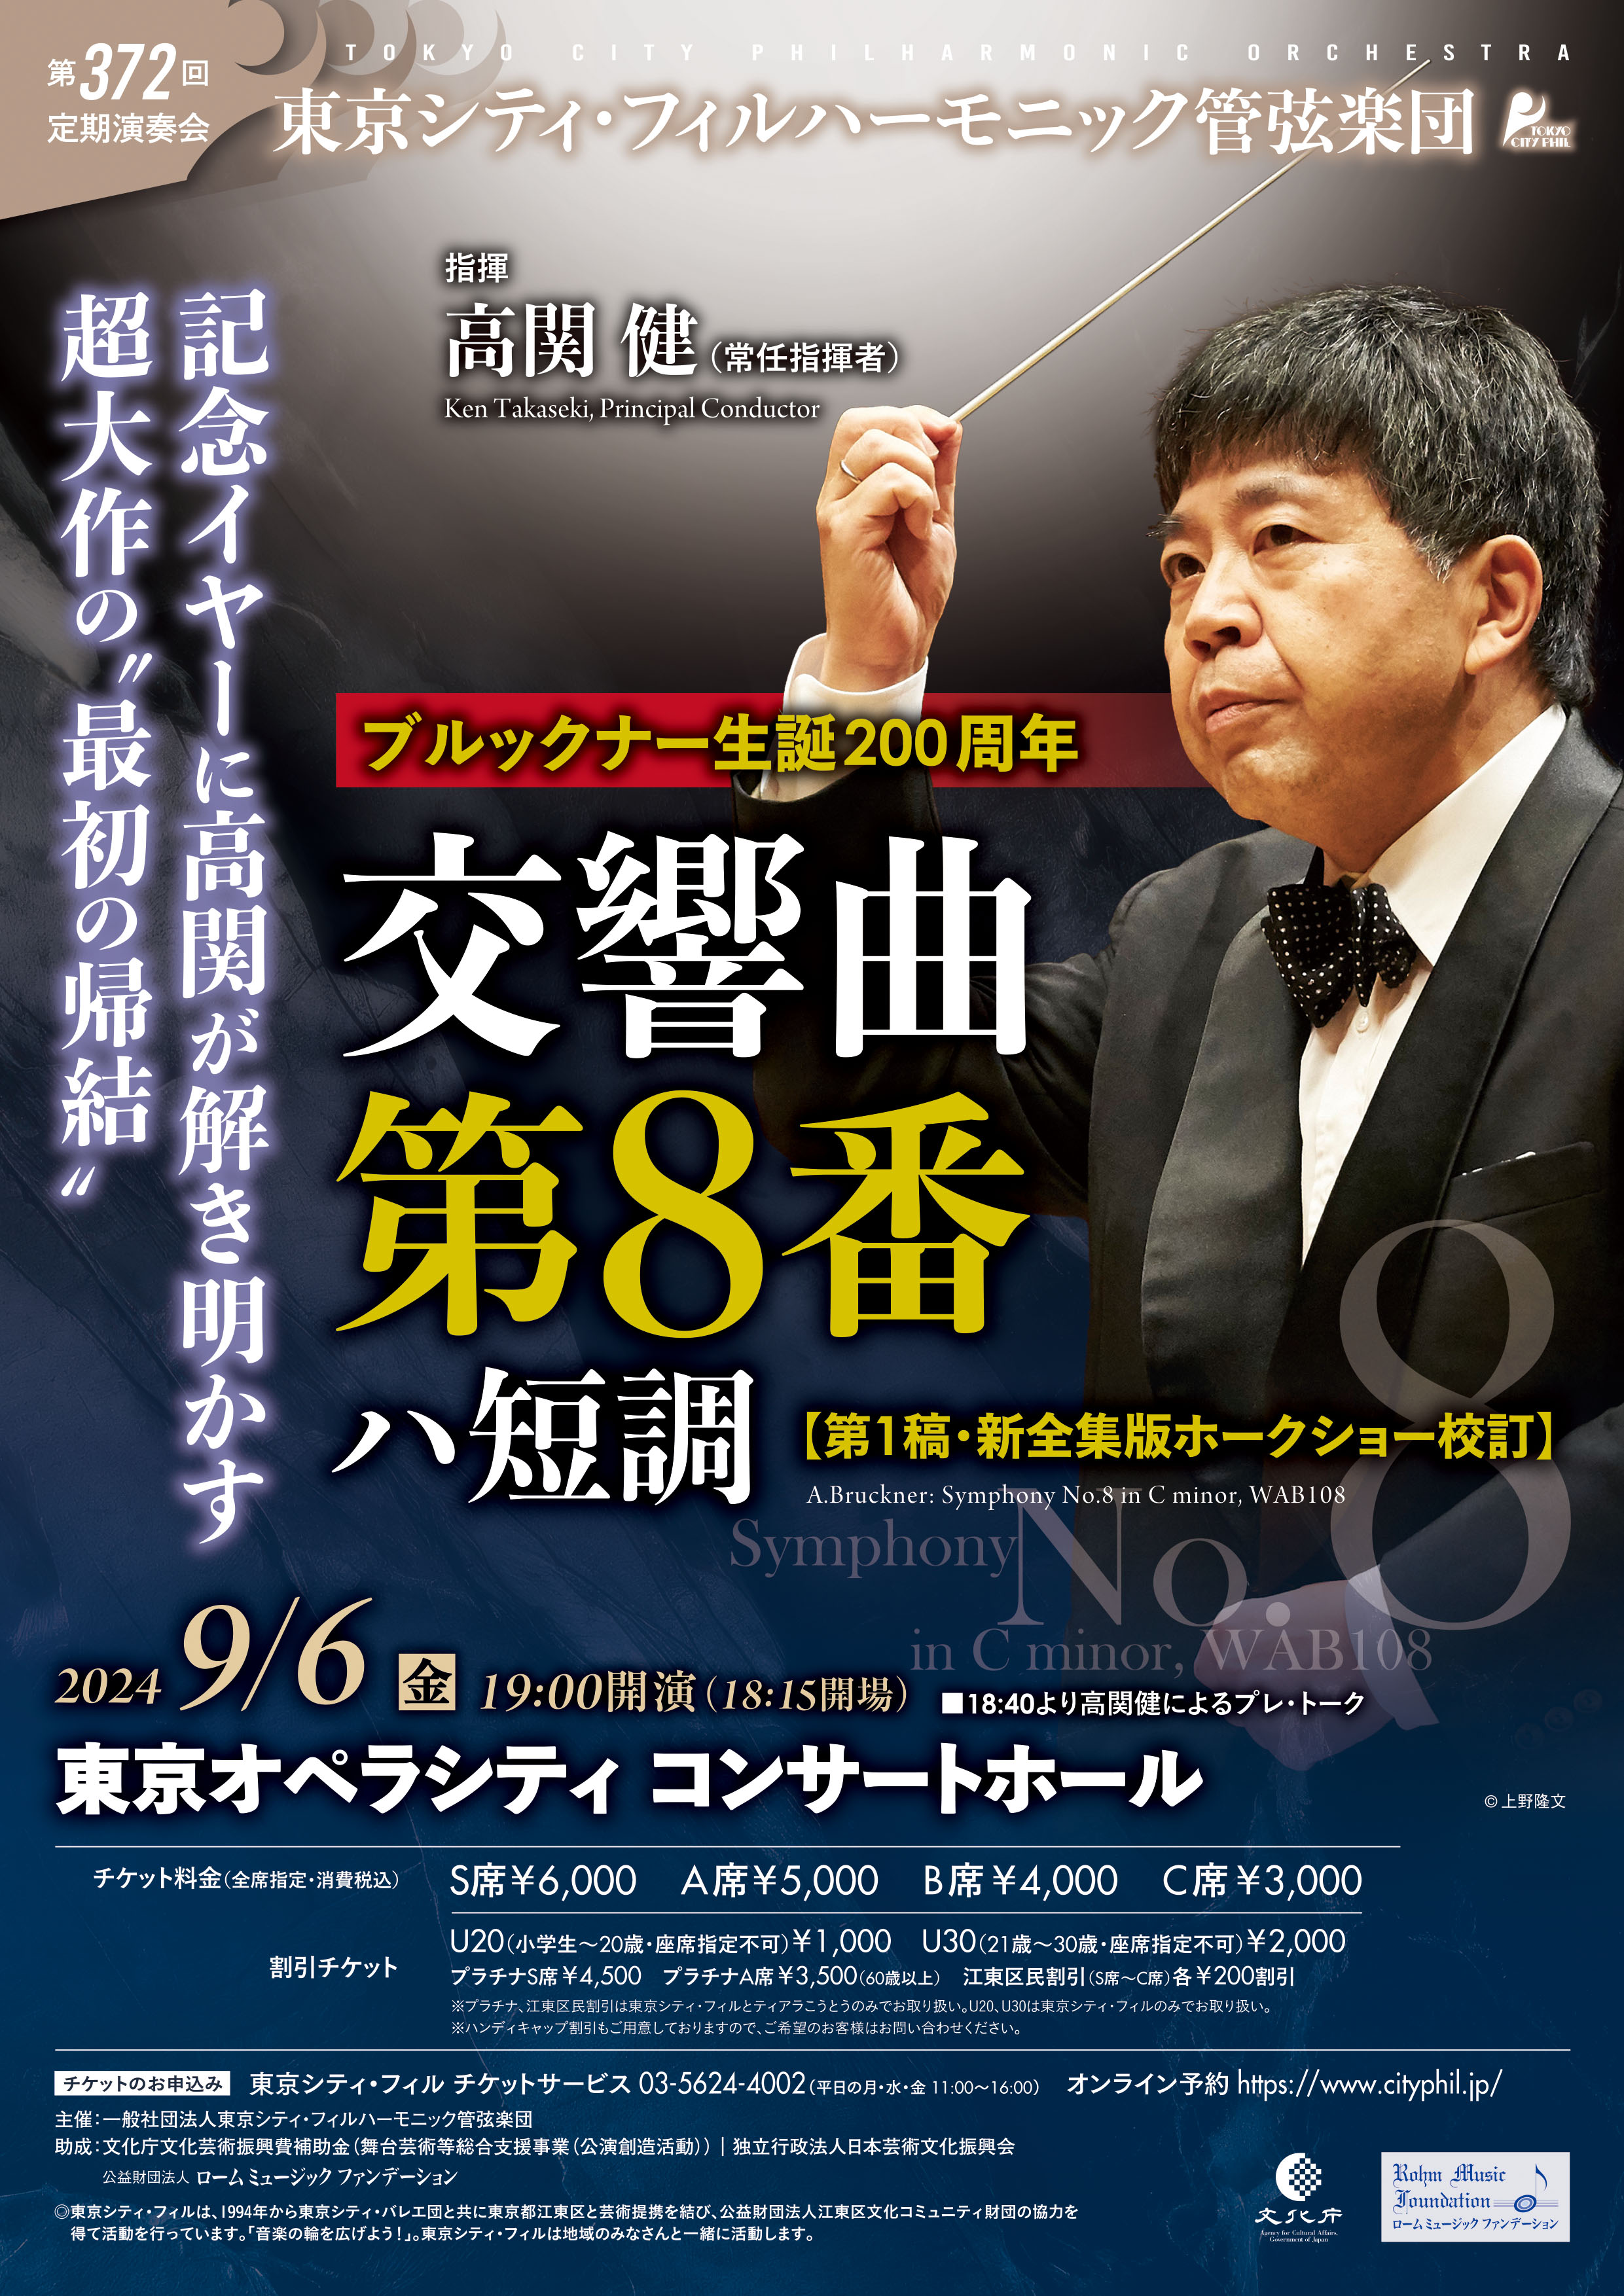 東京シティ・フィルハーモニック管弦楽団第372回定期演奏会のフライヤー画像